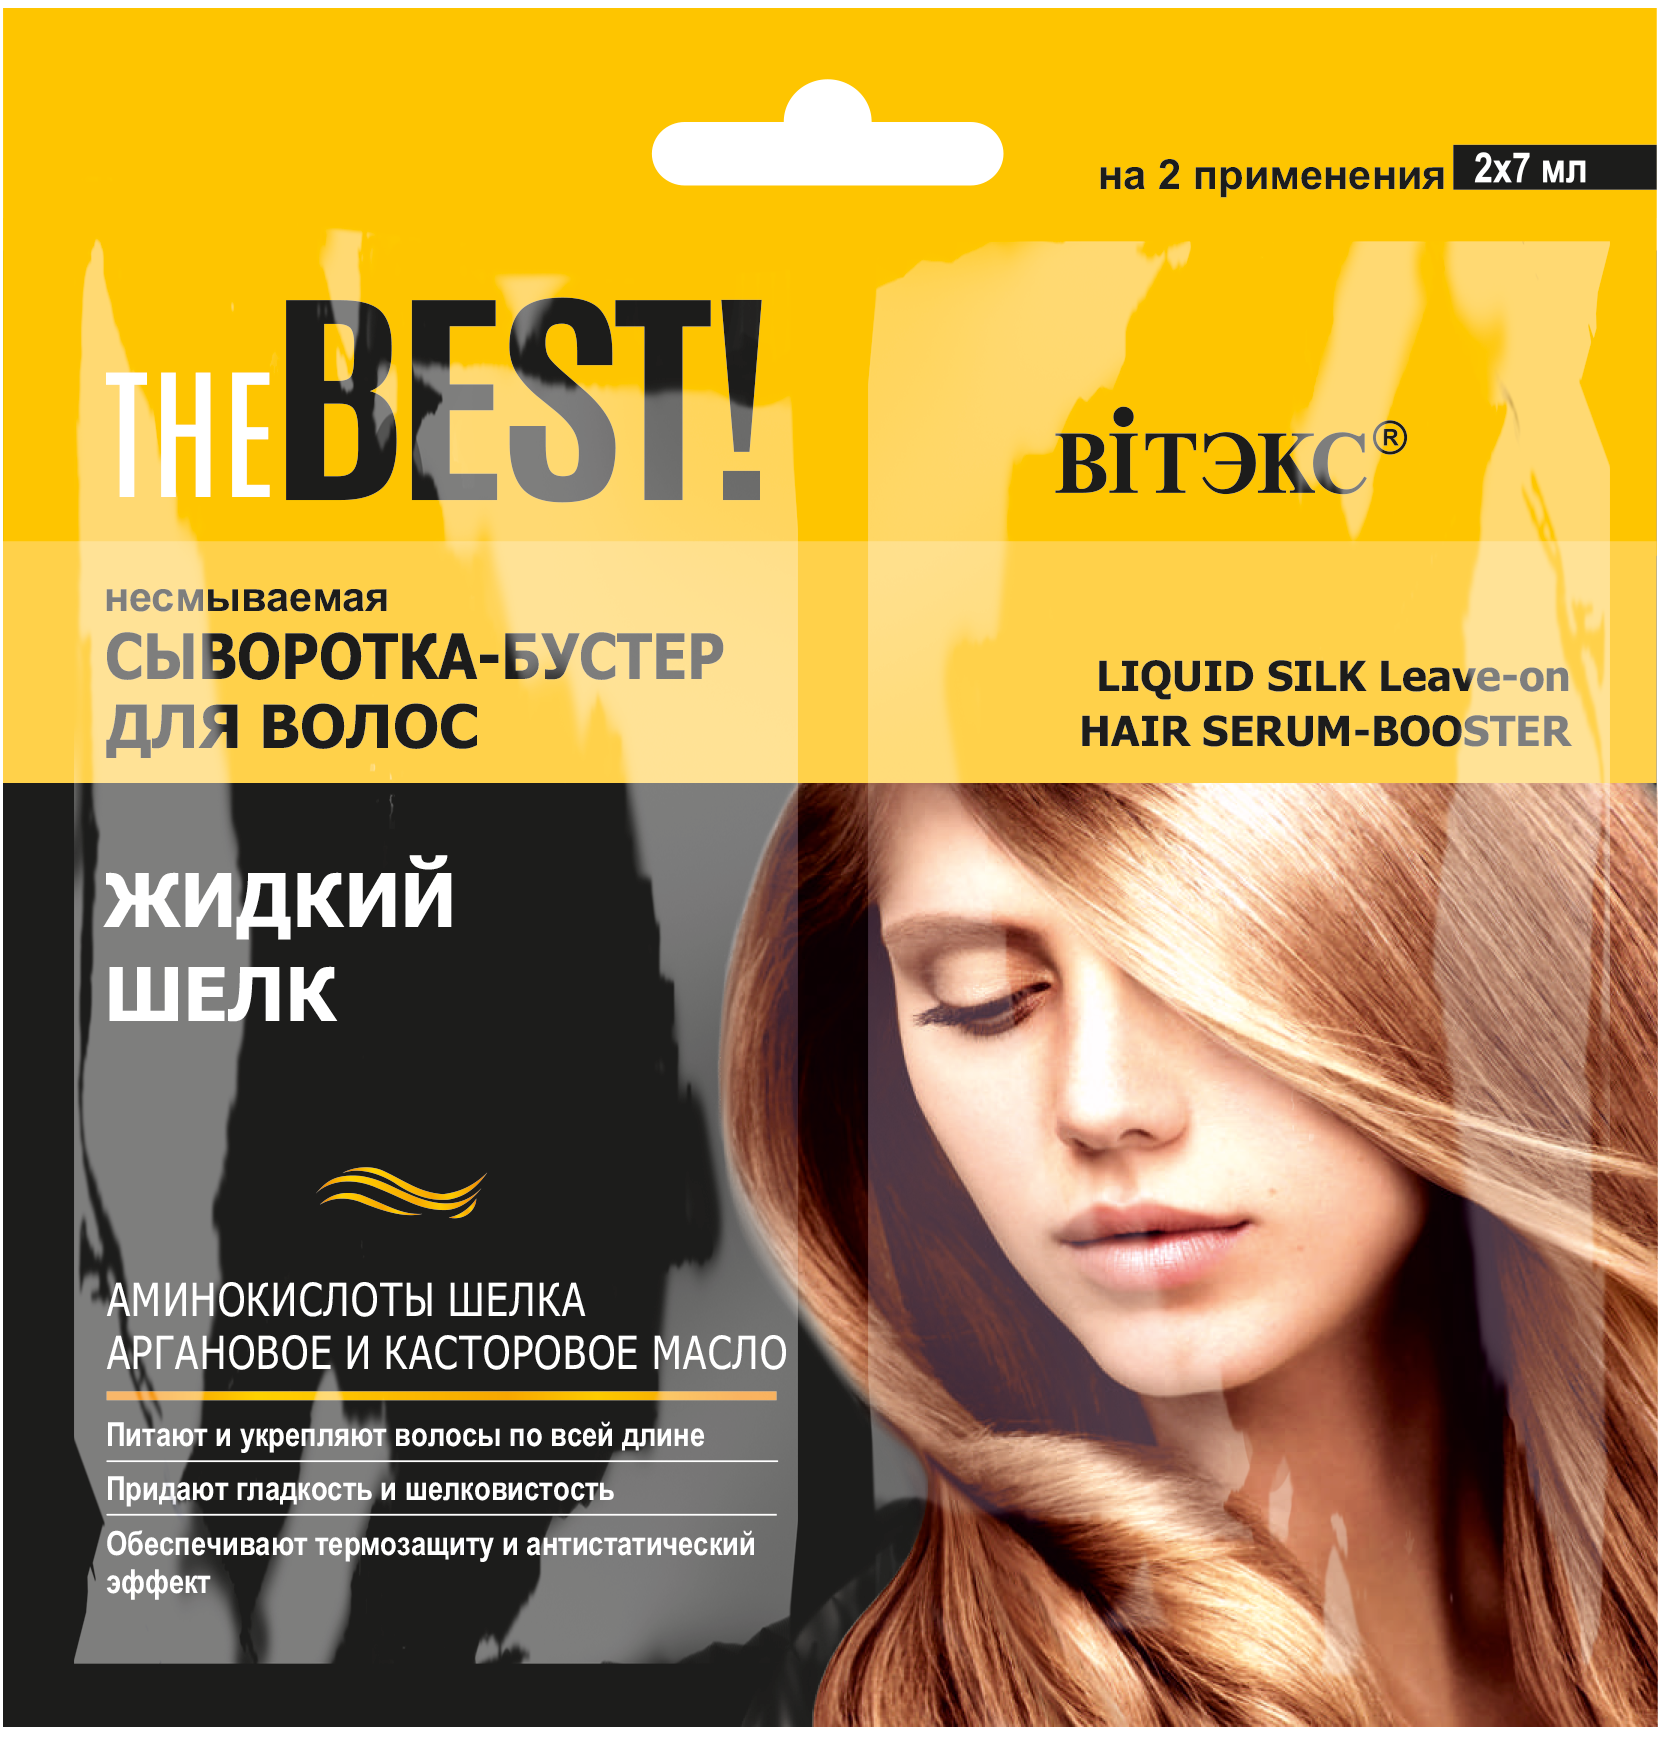 Несмываемая сыворотка-бустер для волос Vitex жидкий шелк THE BEST!, 7 мл